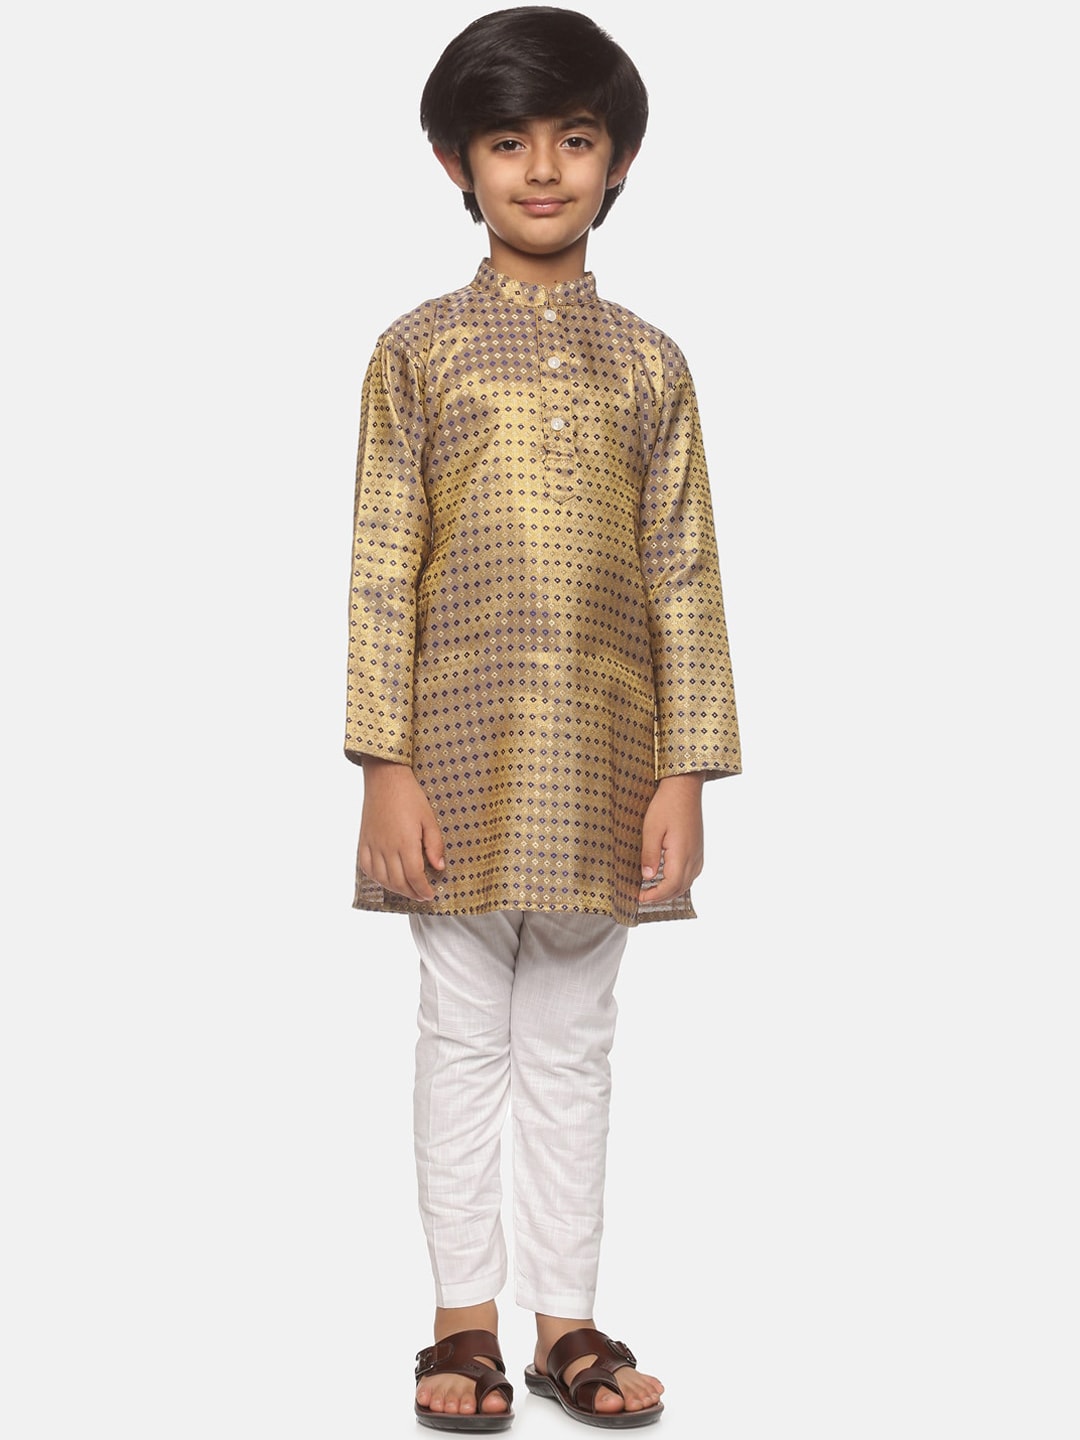 Sethukrishna Boys Gold-Toned Embroidered & Embellished Kurta With Pyjamas - Distacart